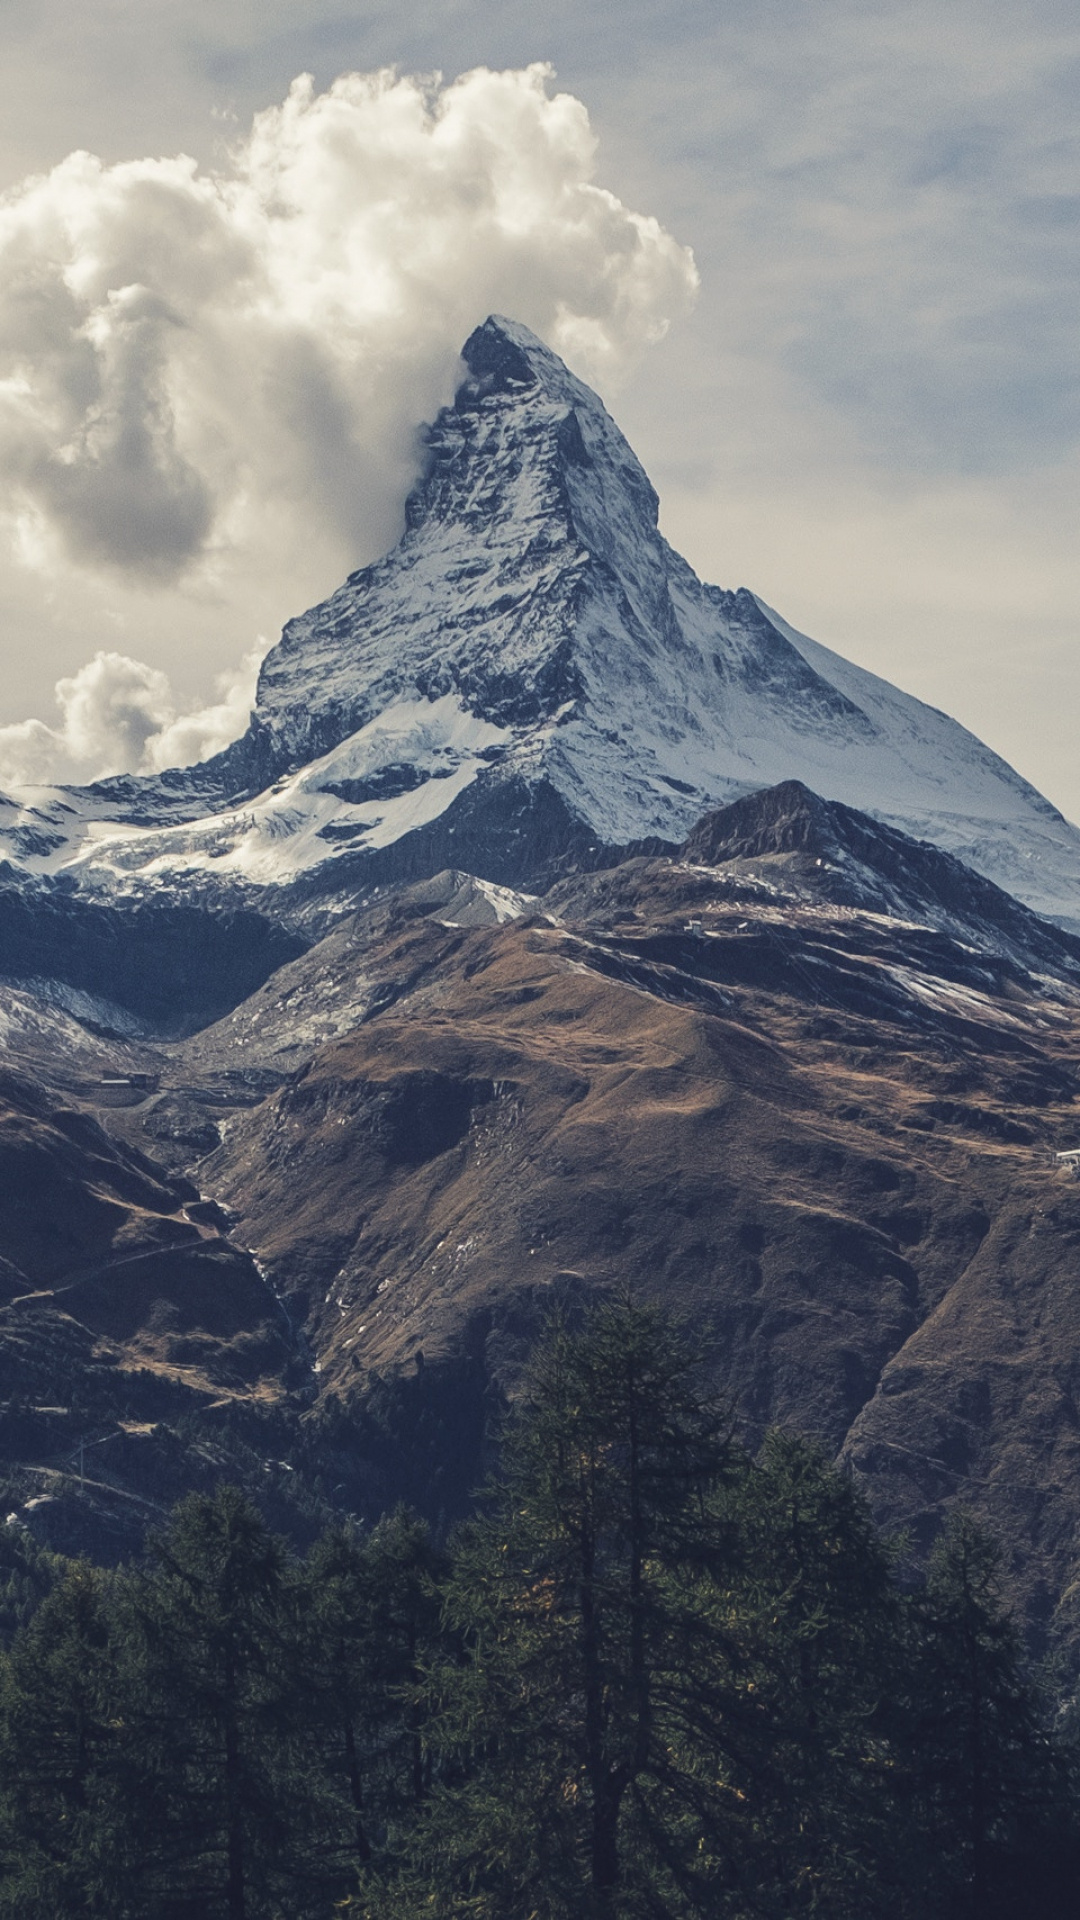 Matterhorn under clouds, iPhone wallpaper, iDrop News, 1080x1920 Full HD Handy